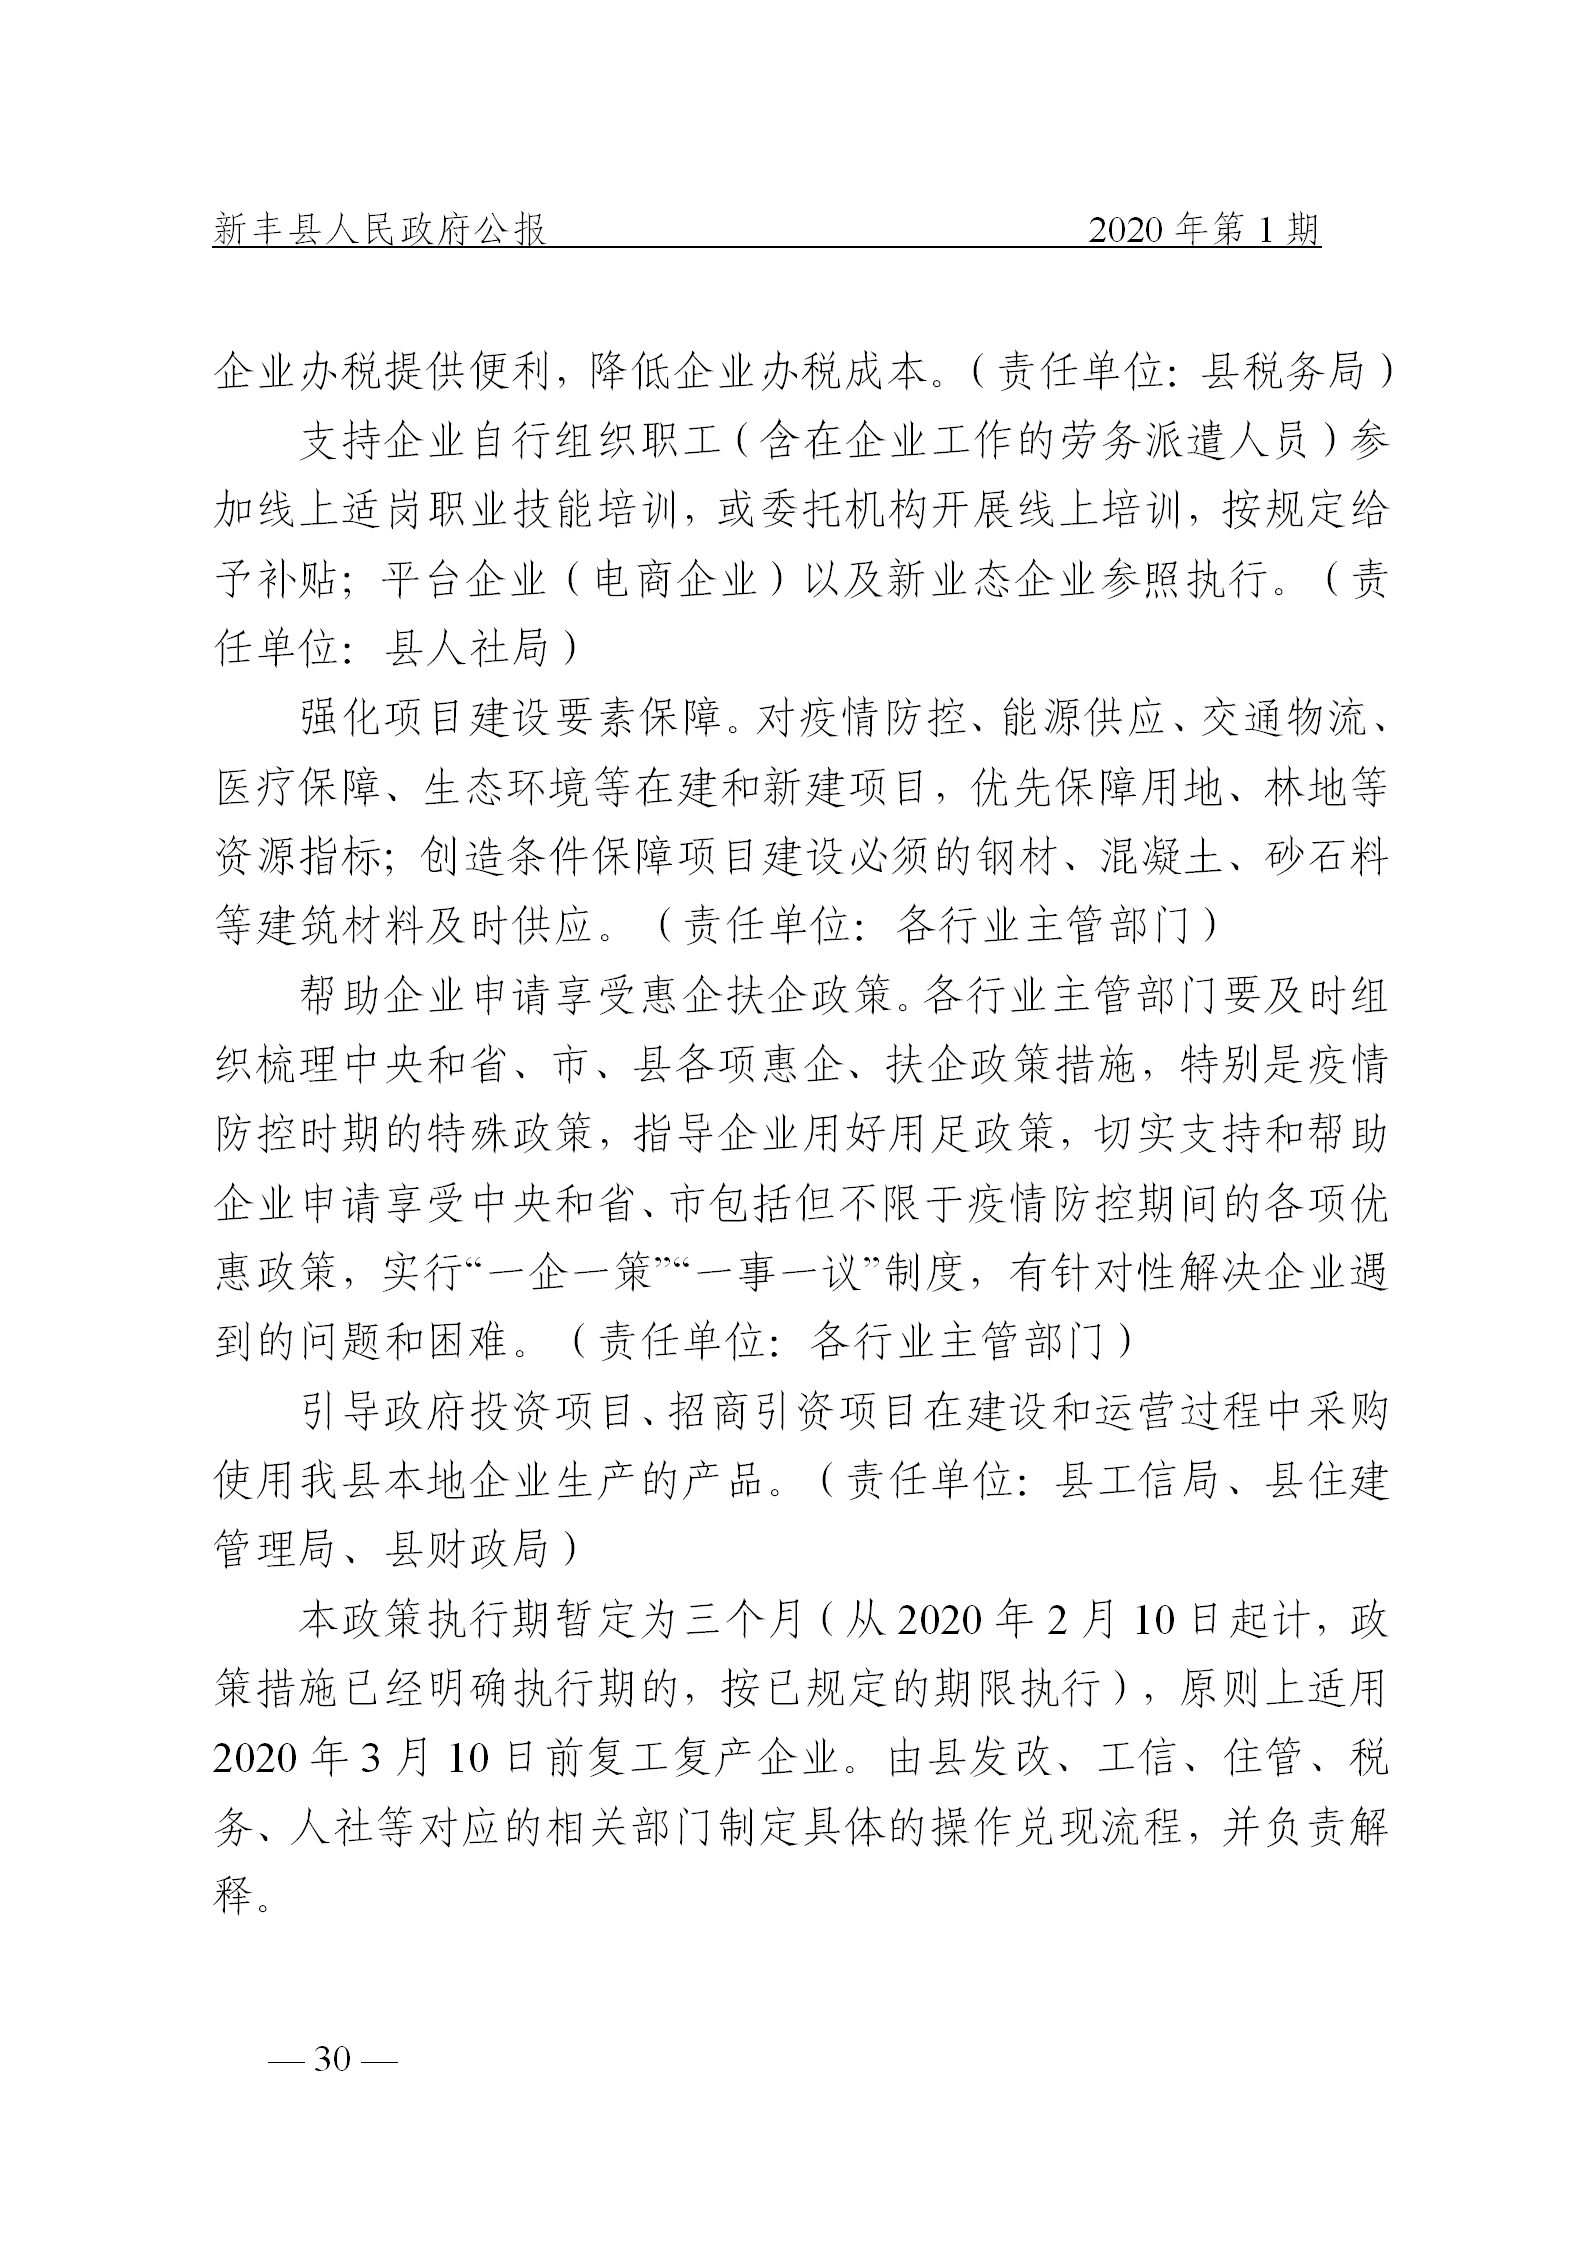 《新丰县人民政府公报》2020年第1期(1)_30.png